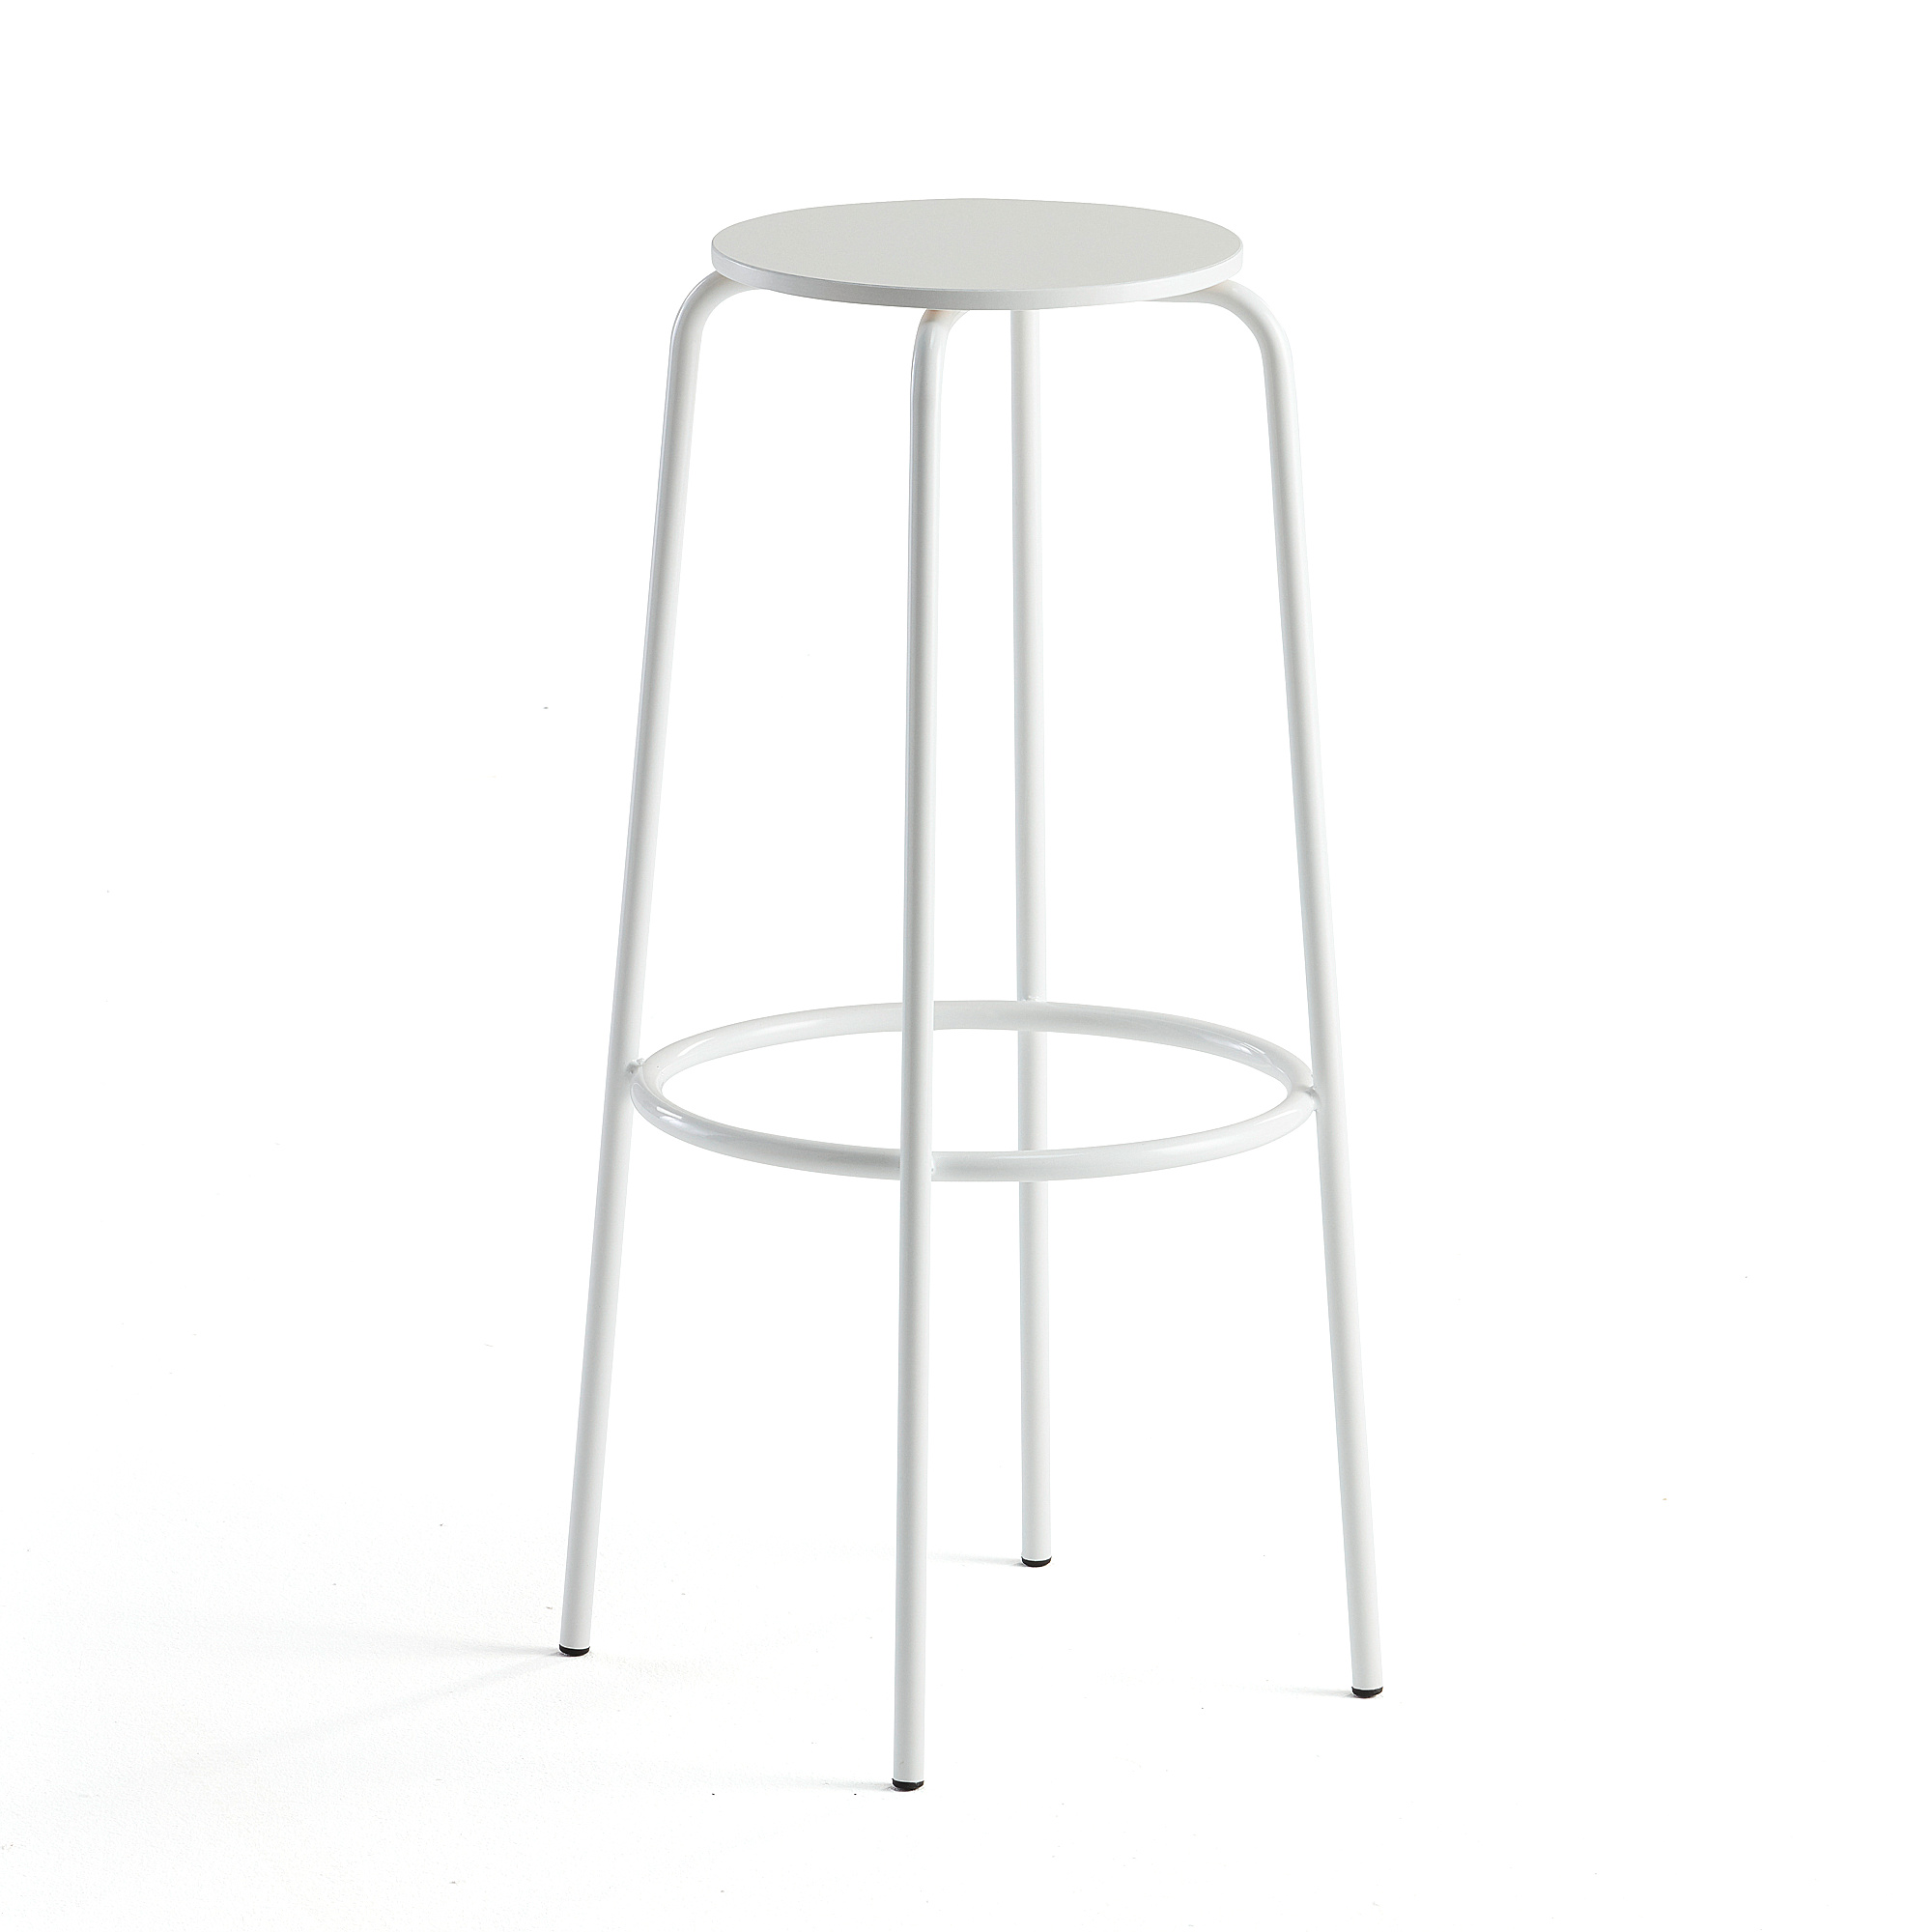 E-shop Barová stolička TIMMY, biely rám, biely sedák, V 830 mm